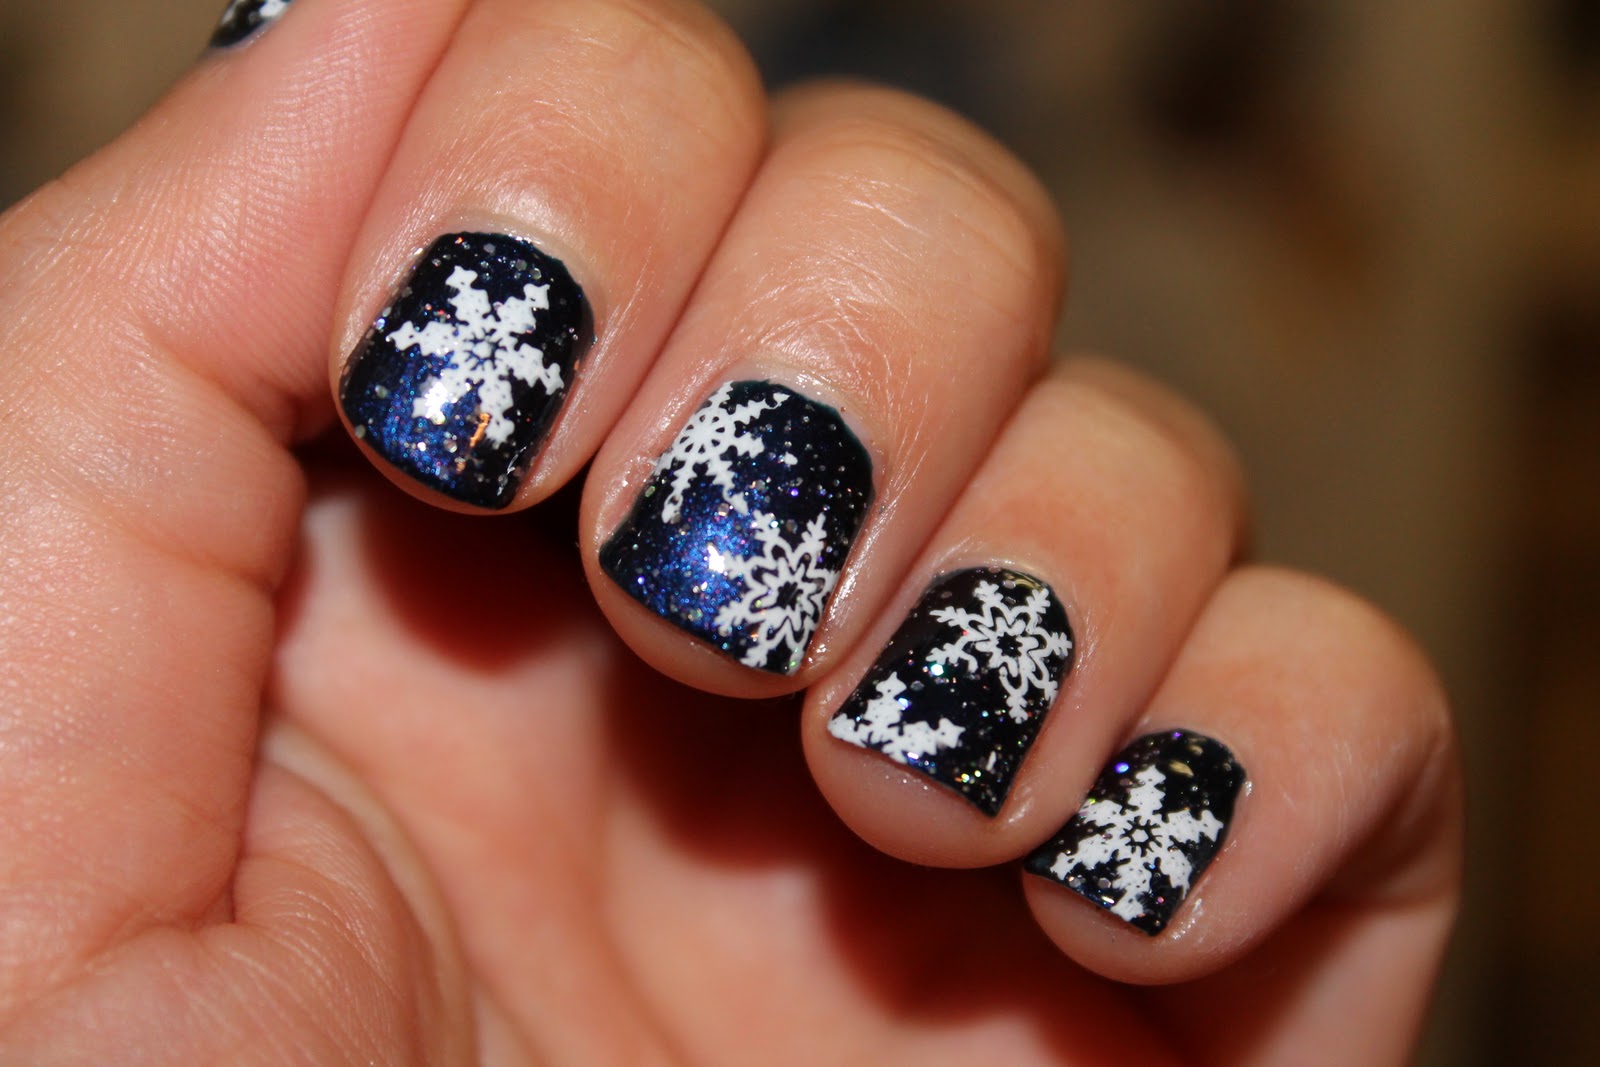 9. Snowflake Toe Nail Polish Designs - wide 3